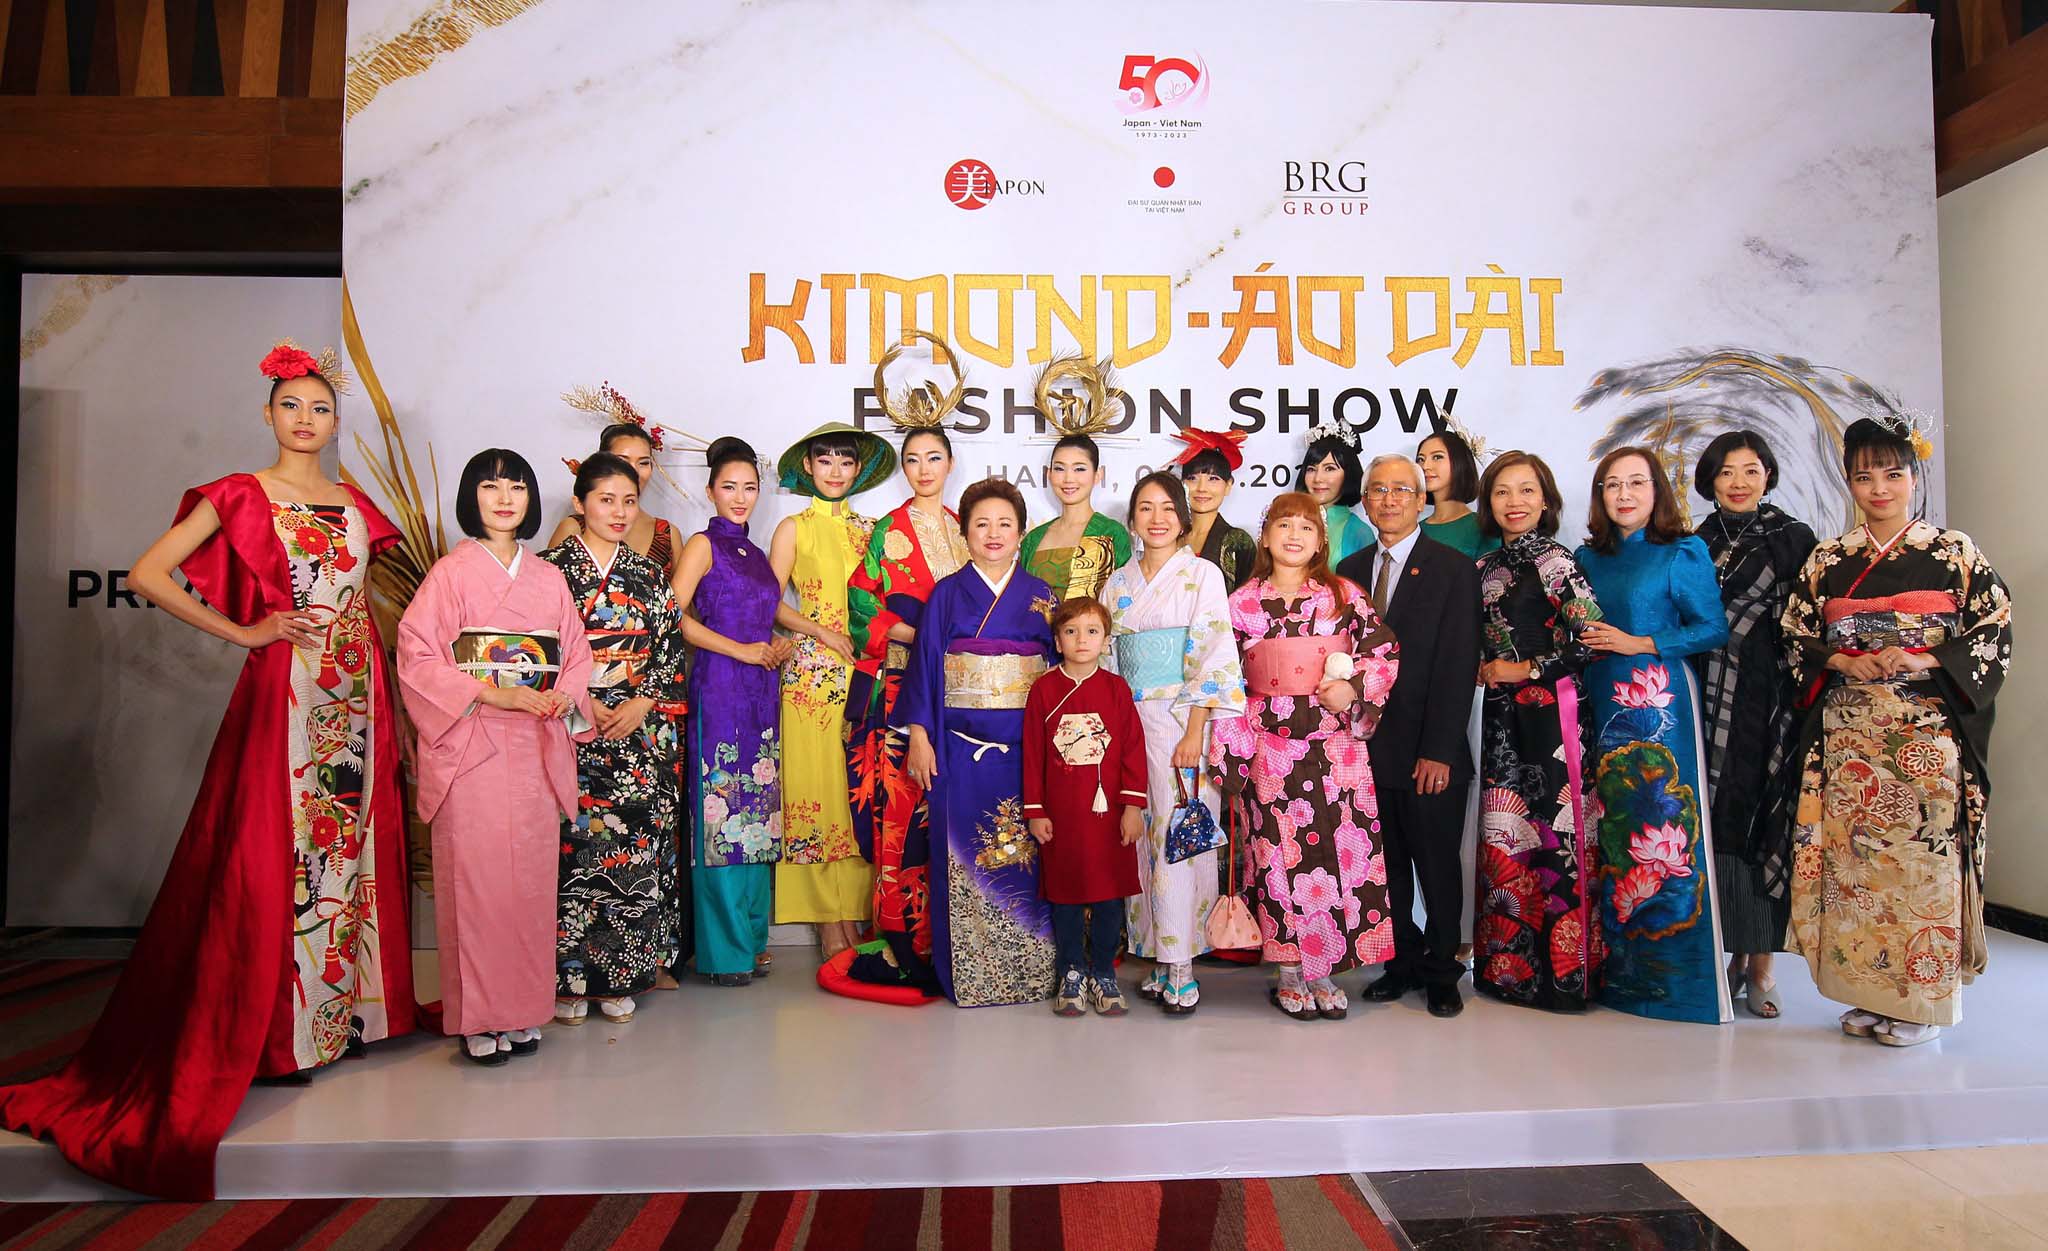 Thành công vượt mong đợi, chương trình Kimono - Aodai Fashion show sẽ góp phần gắn kết bền chặt hơn nữa mối quan hệ hữu nghị, hợp tác và chia sẻ giữa người dân Việt Nam - Nhật Bản trong 50 năm tiếp theo và những cột mốc xa hơn nữa trong tương lai.